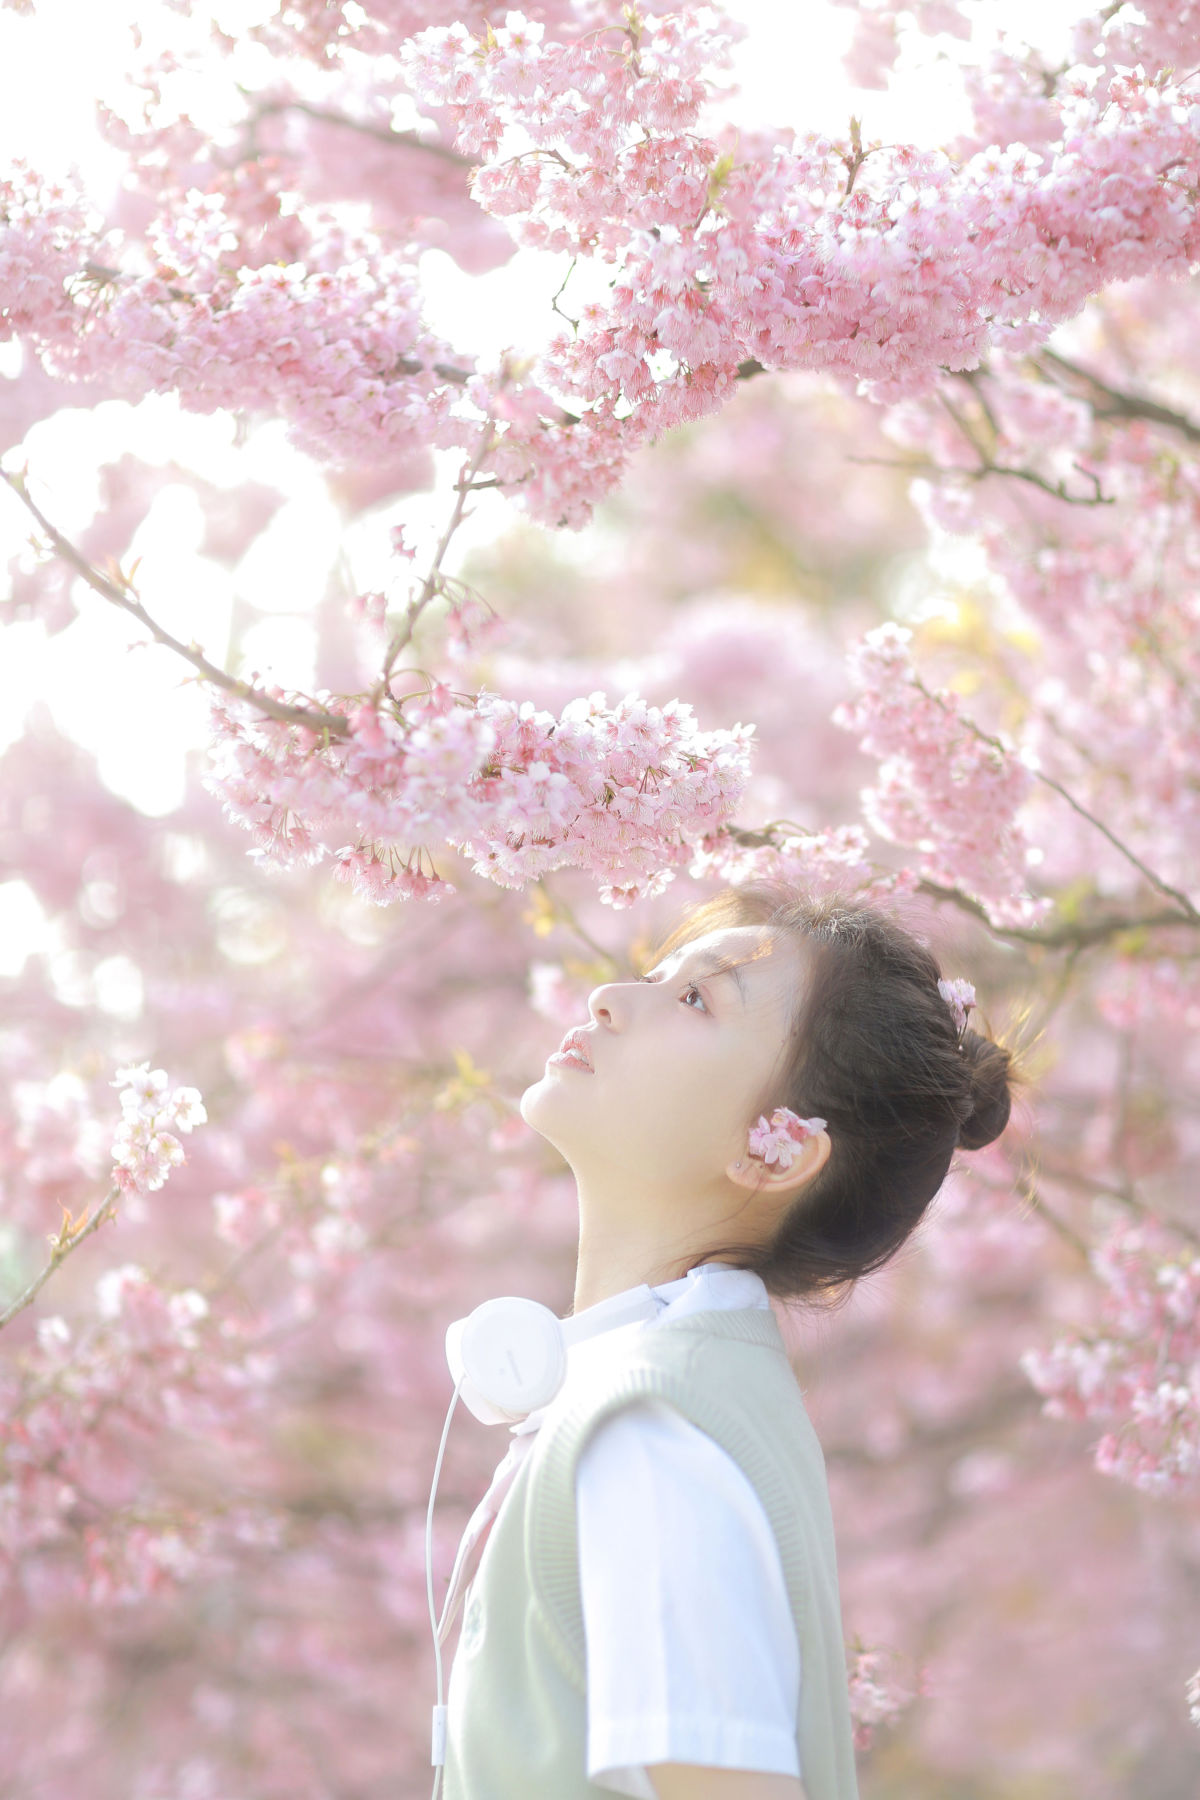 三园猫_瑞秋的快乐人生《樱花下的春日心动》美图作品图片3